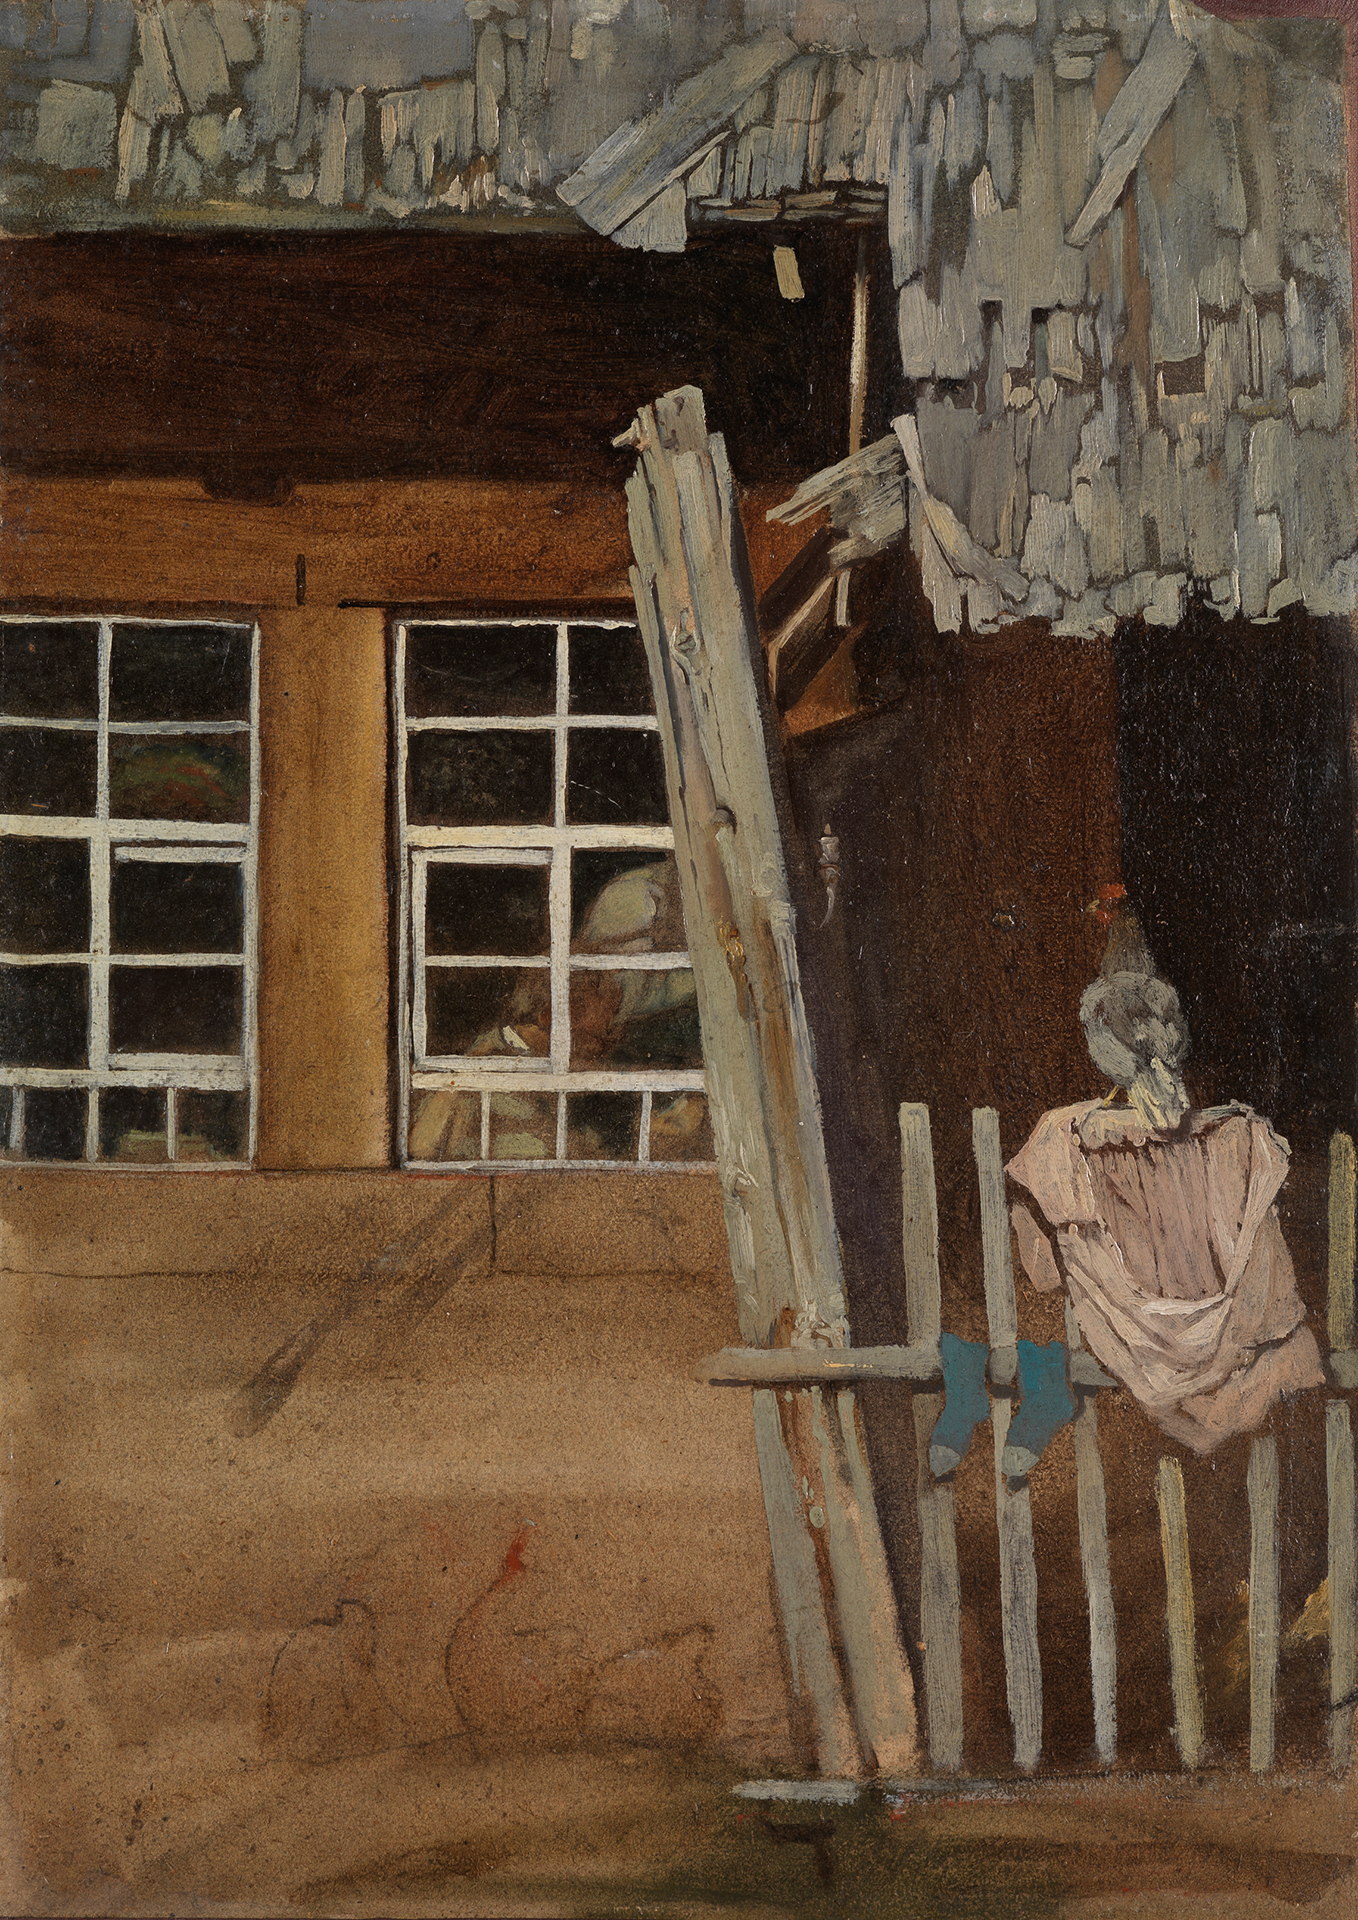 Gemälde, das die Ecke eines Hauses zeigt, auf dessen Haus Wäsche aufgehängt ist und ein Huhn sitzt.